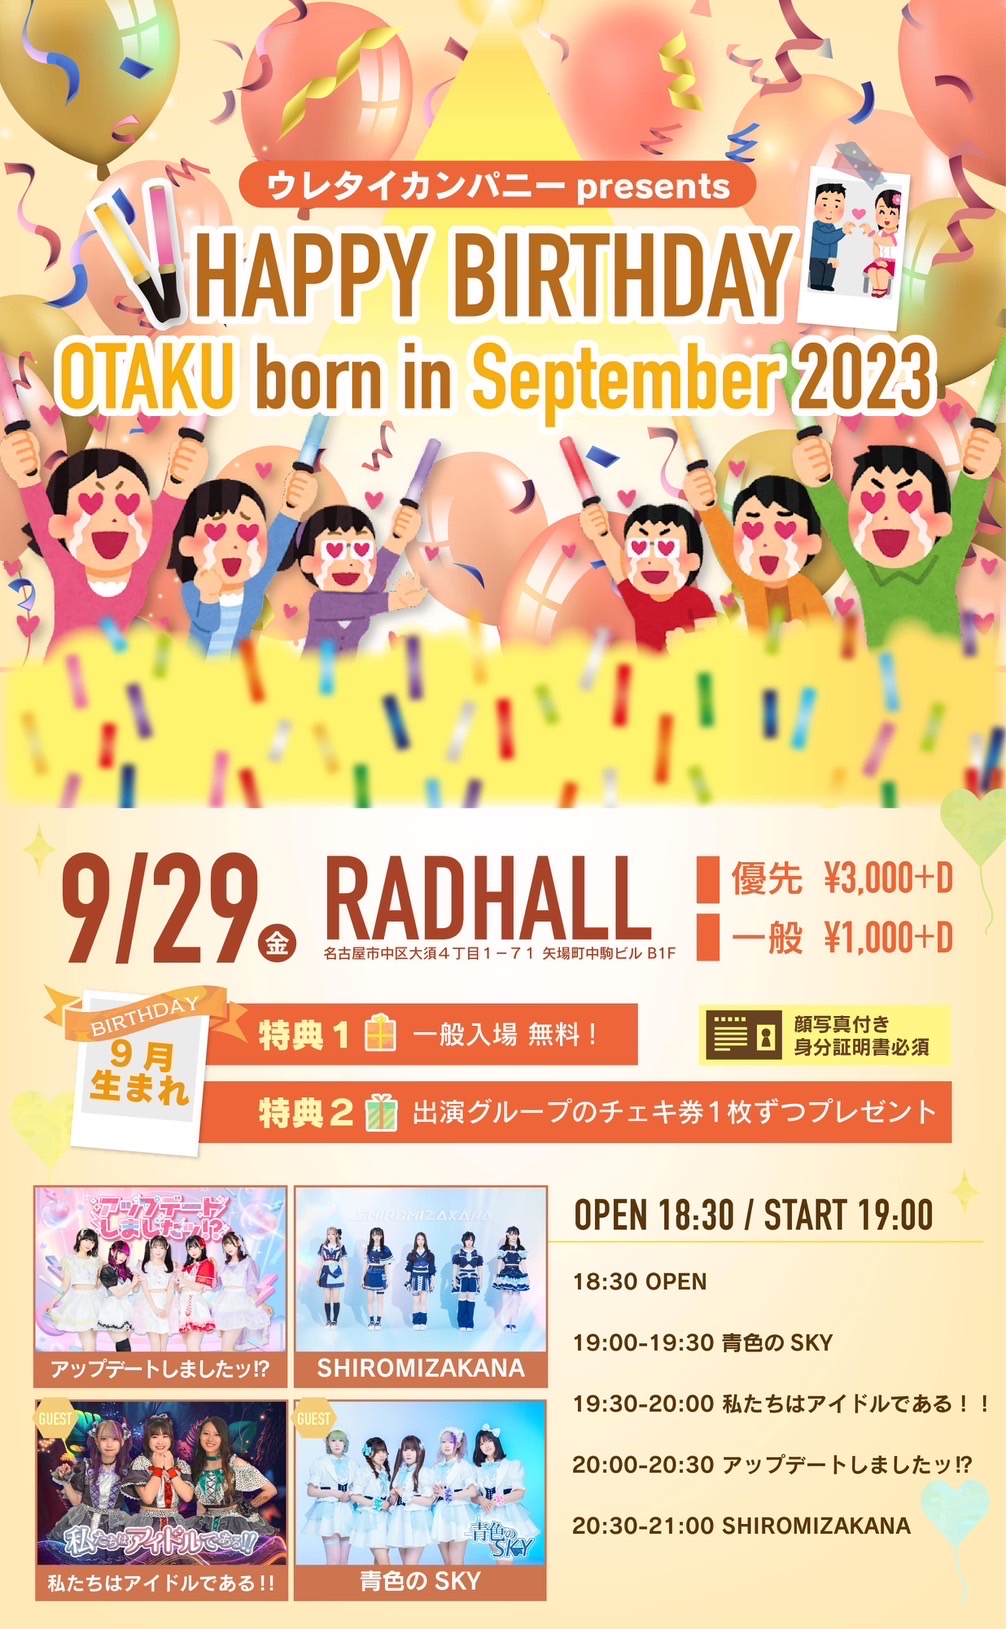 ウレタイカンパニー presents.HAPPY BIRTHDAY OTAKU born in September 2023